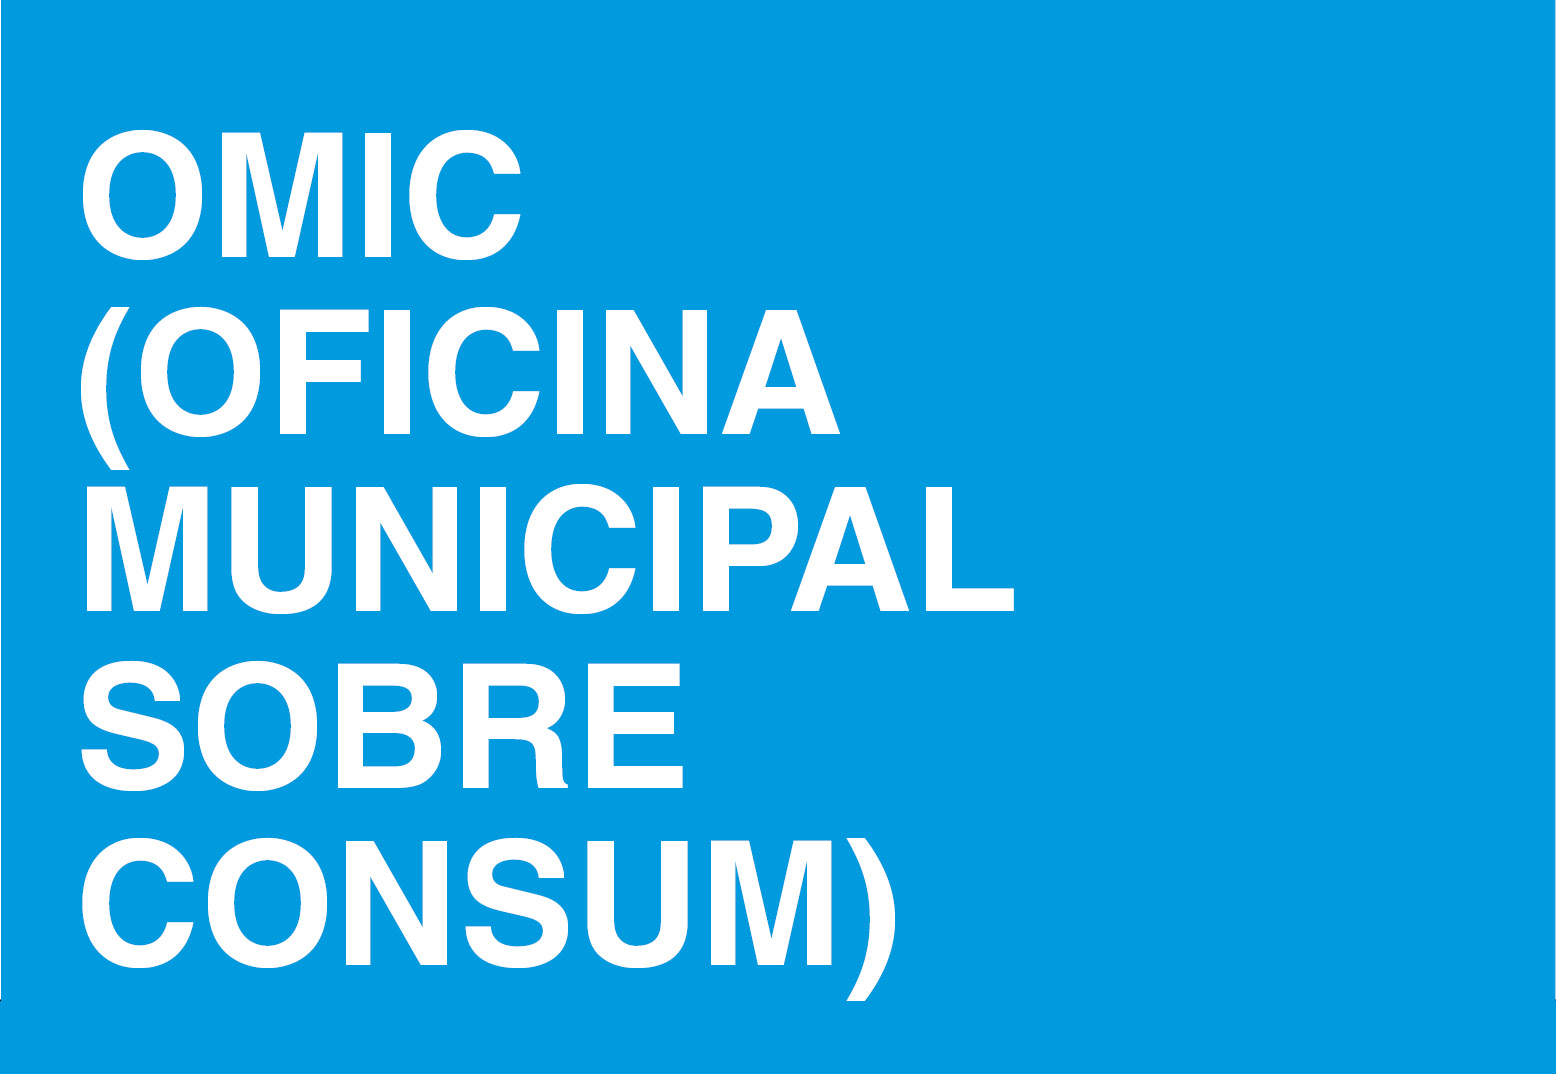 OMIC (Oficina Municipal Informació sobre Consum)